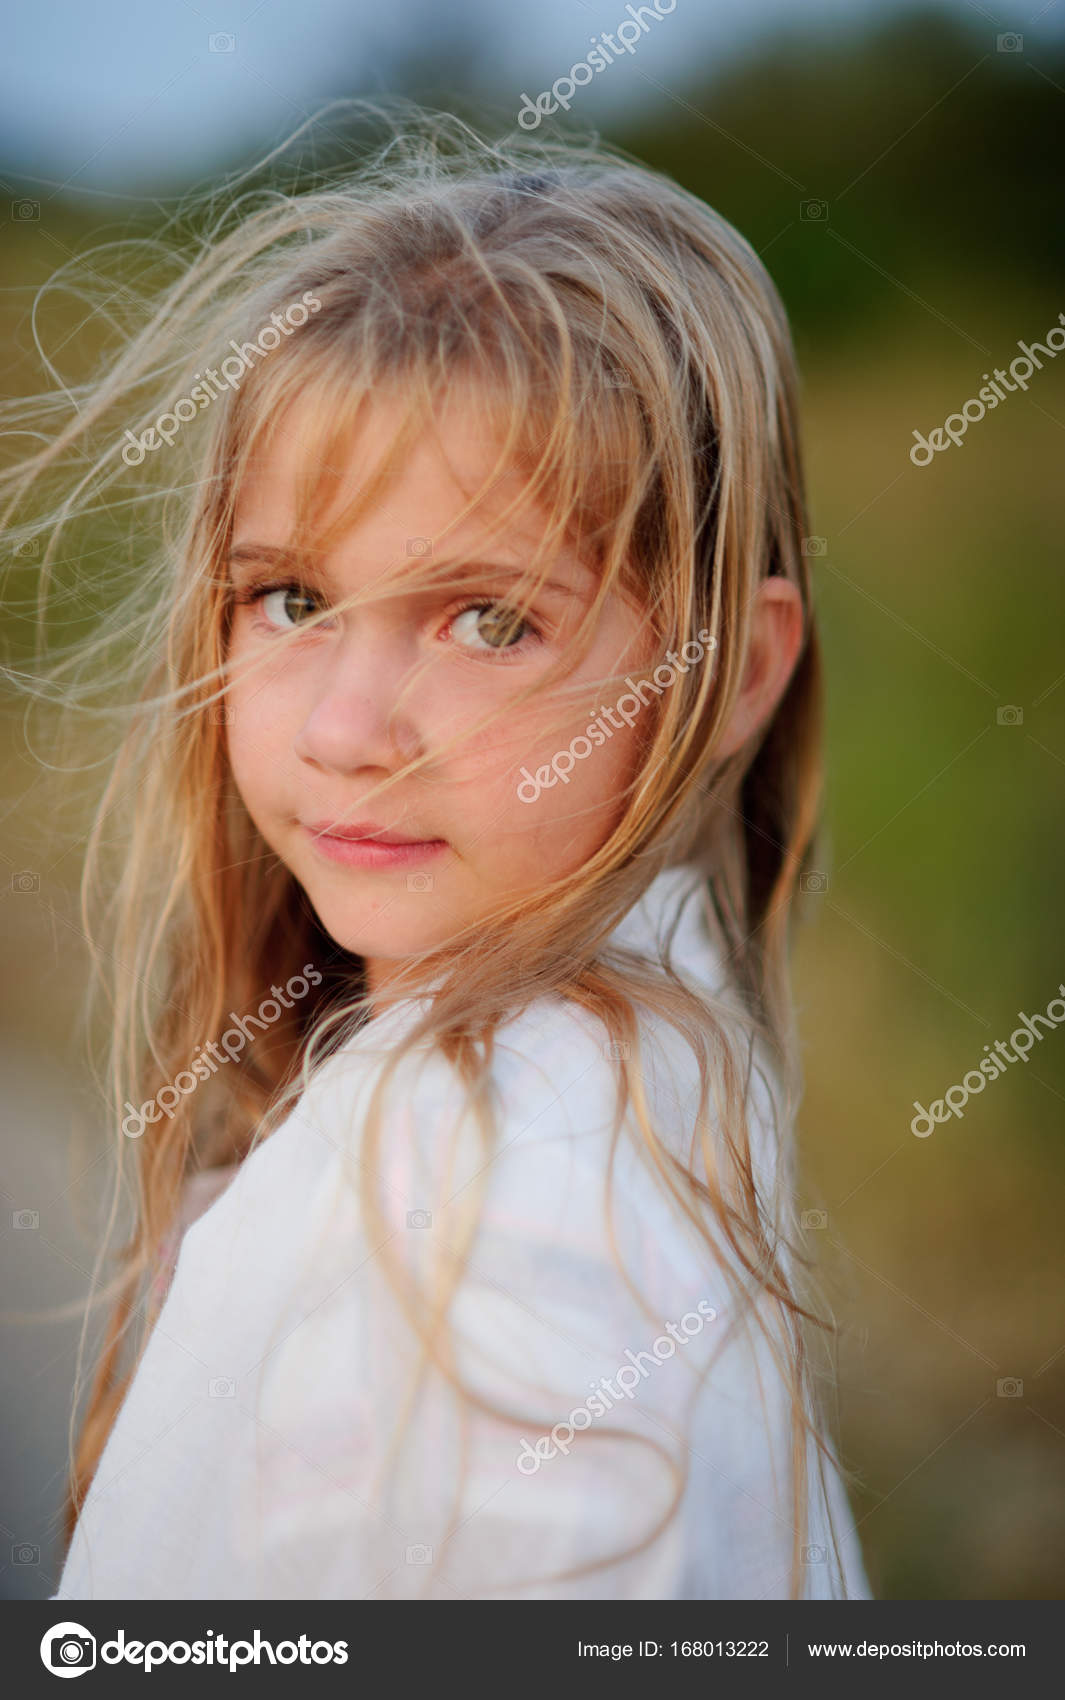 Fotos de Menina 10 anos, Imagens de Menina 10 anos sem royalties